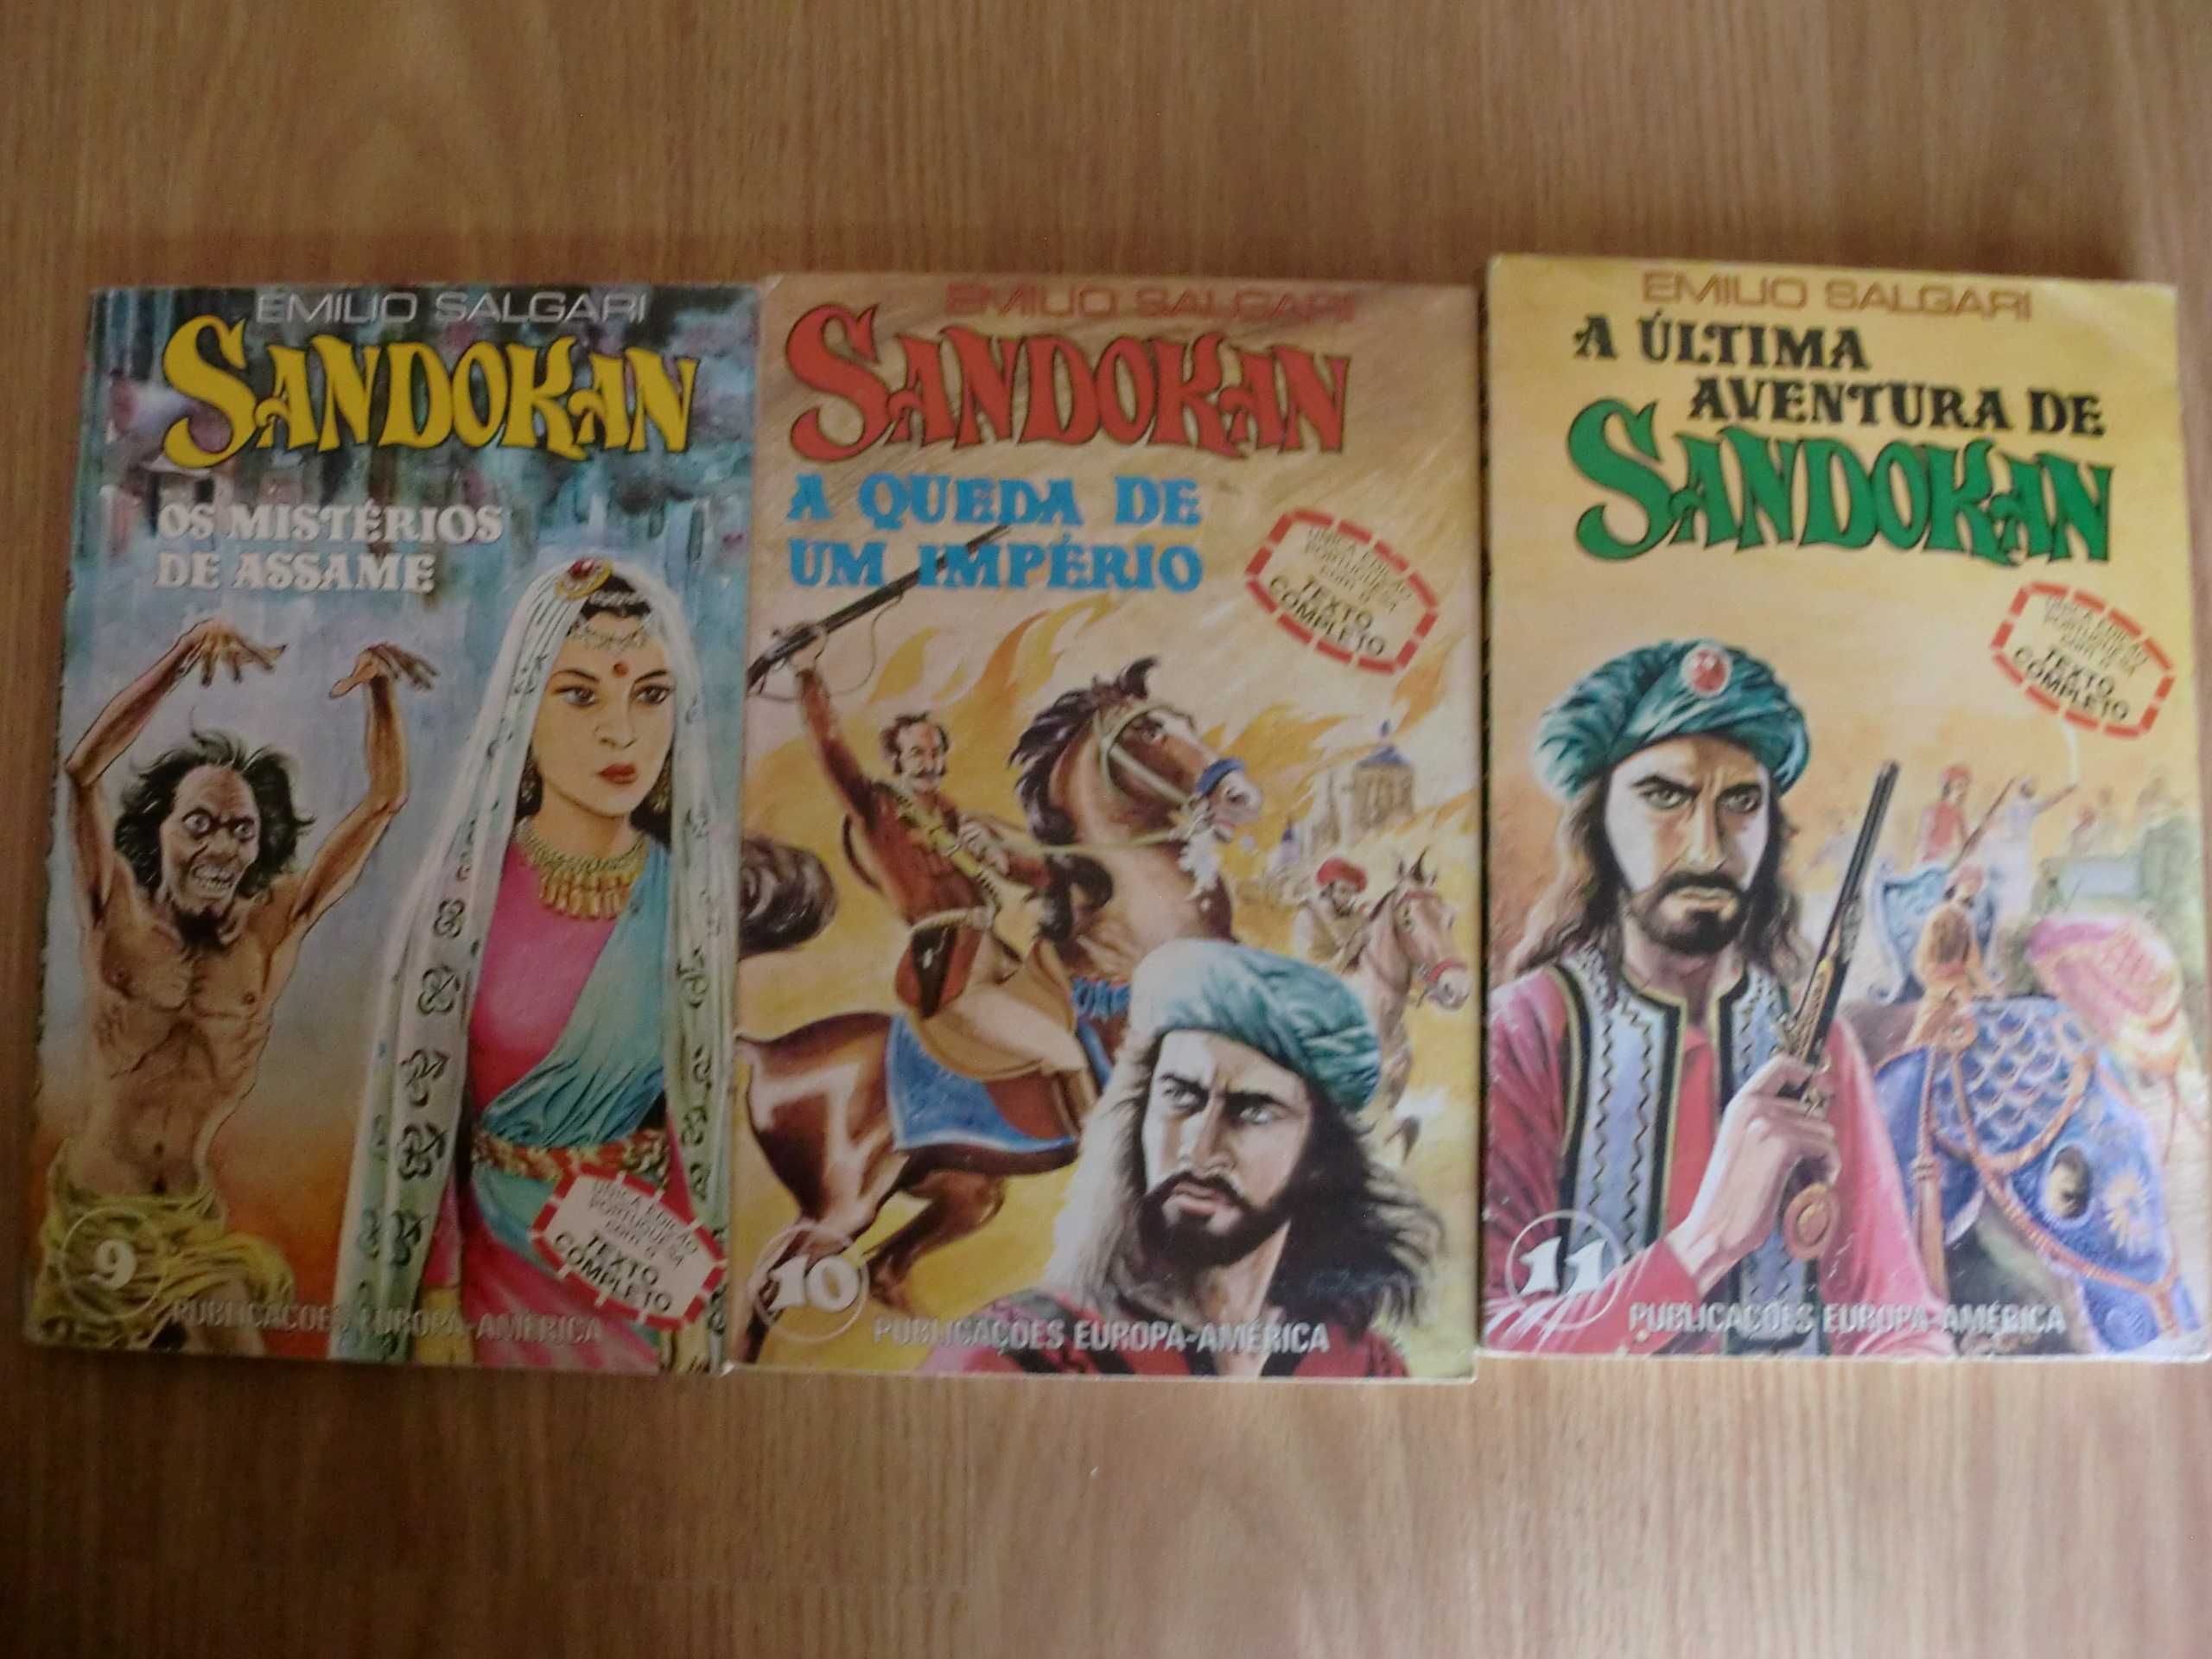 Sandokan
de Emílio Salgari